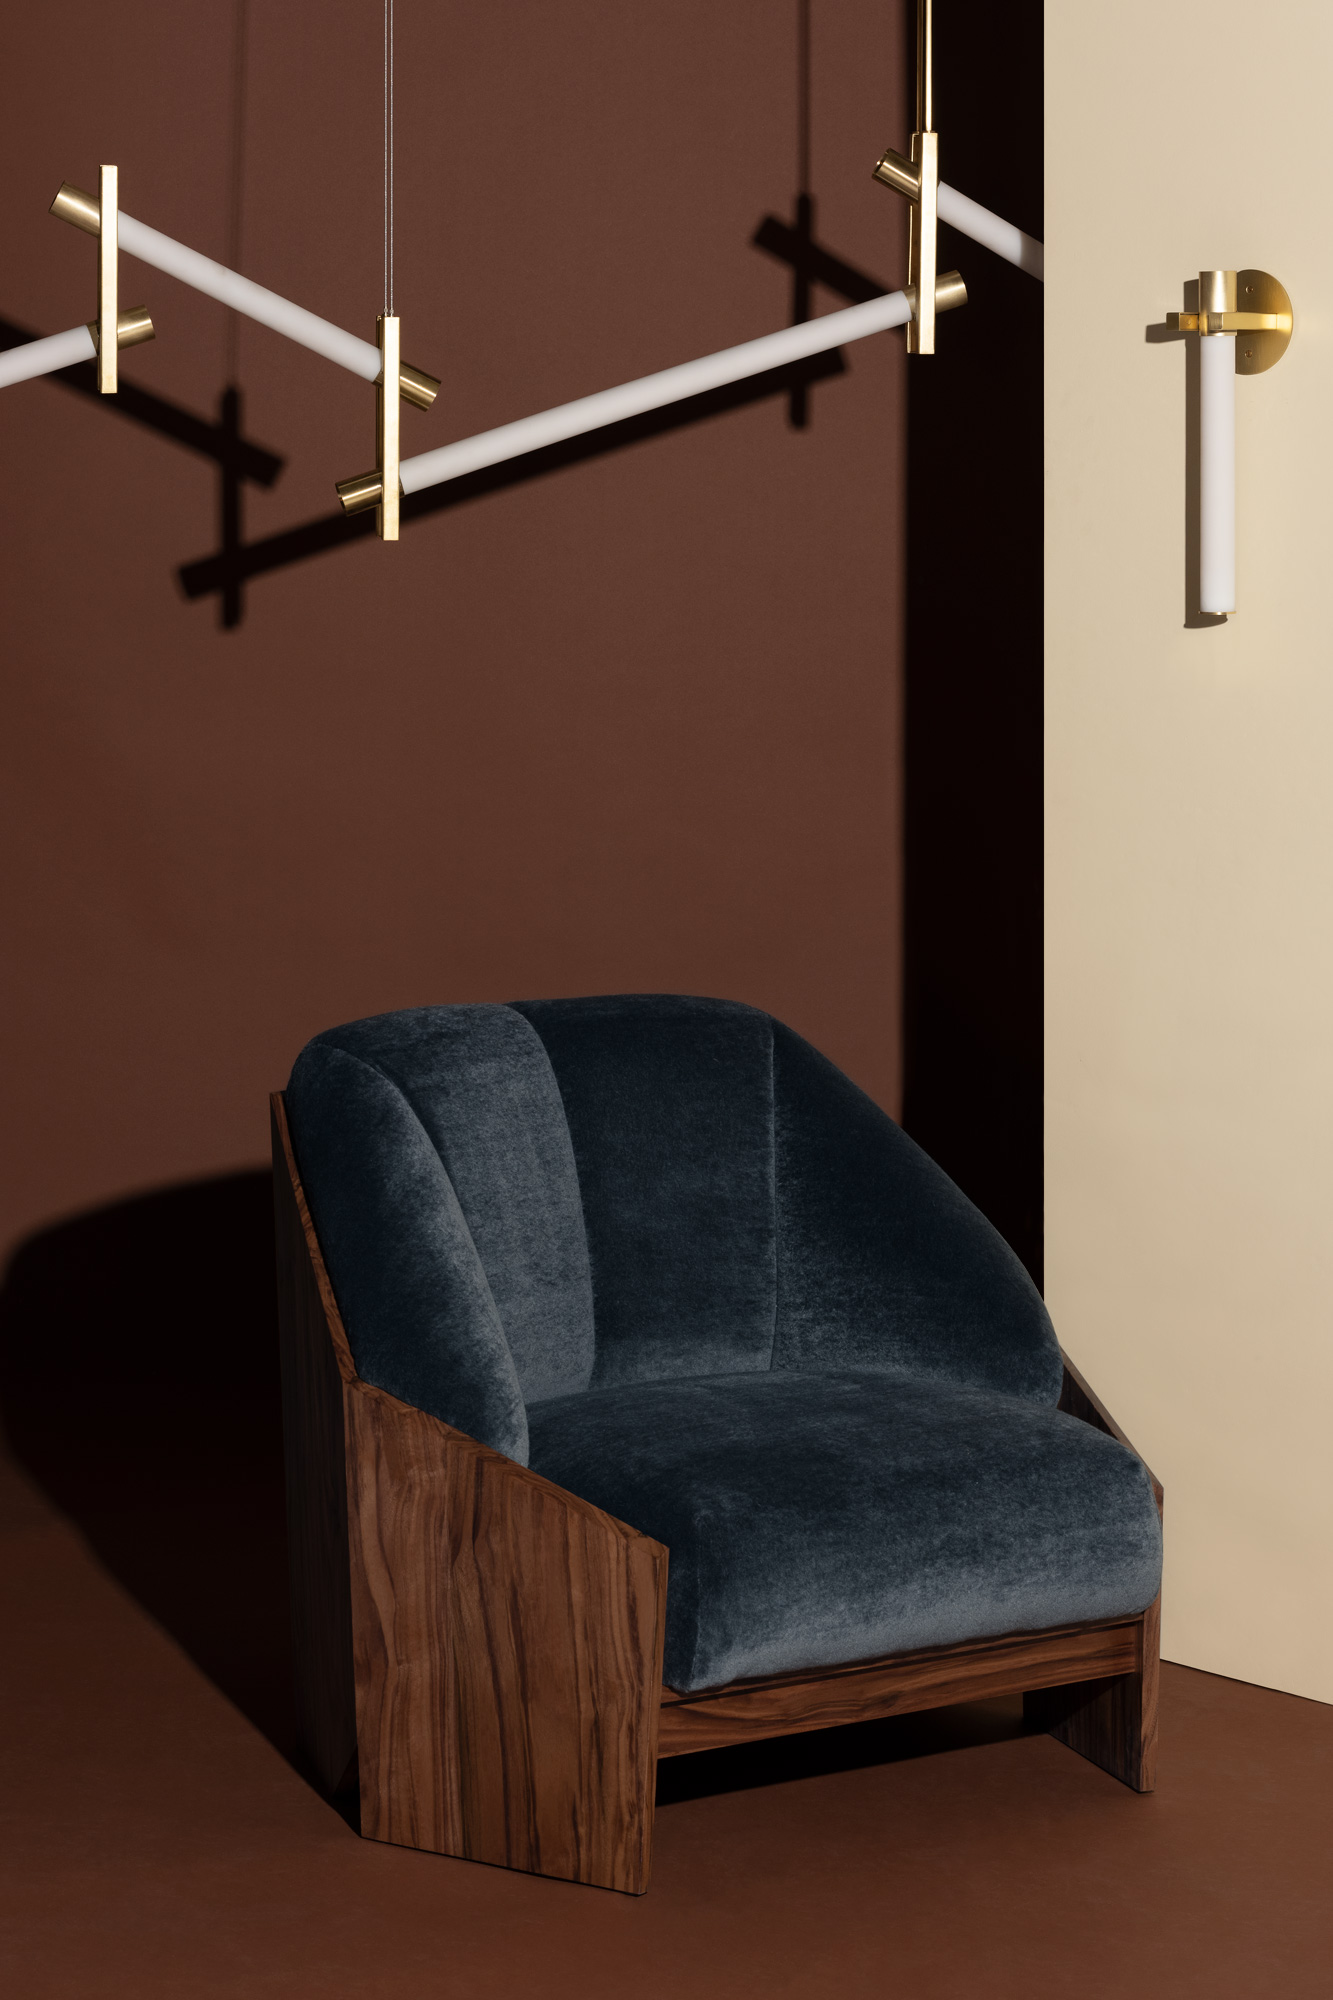 Atelier de Troupe - NEW – Château Chair